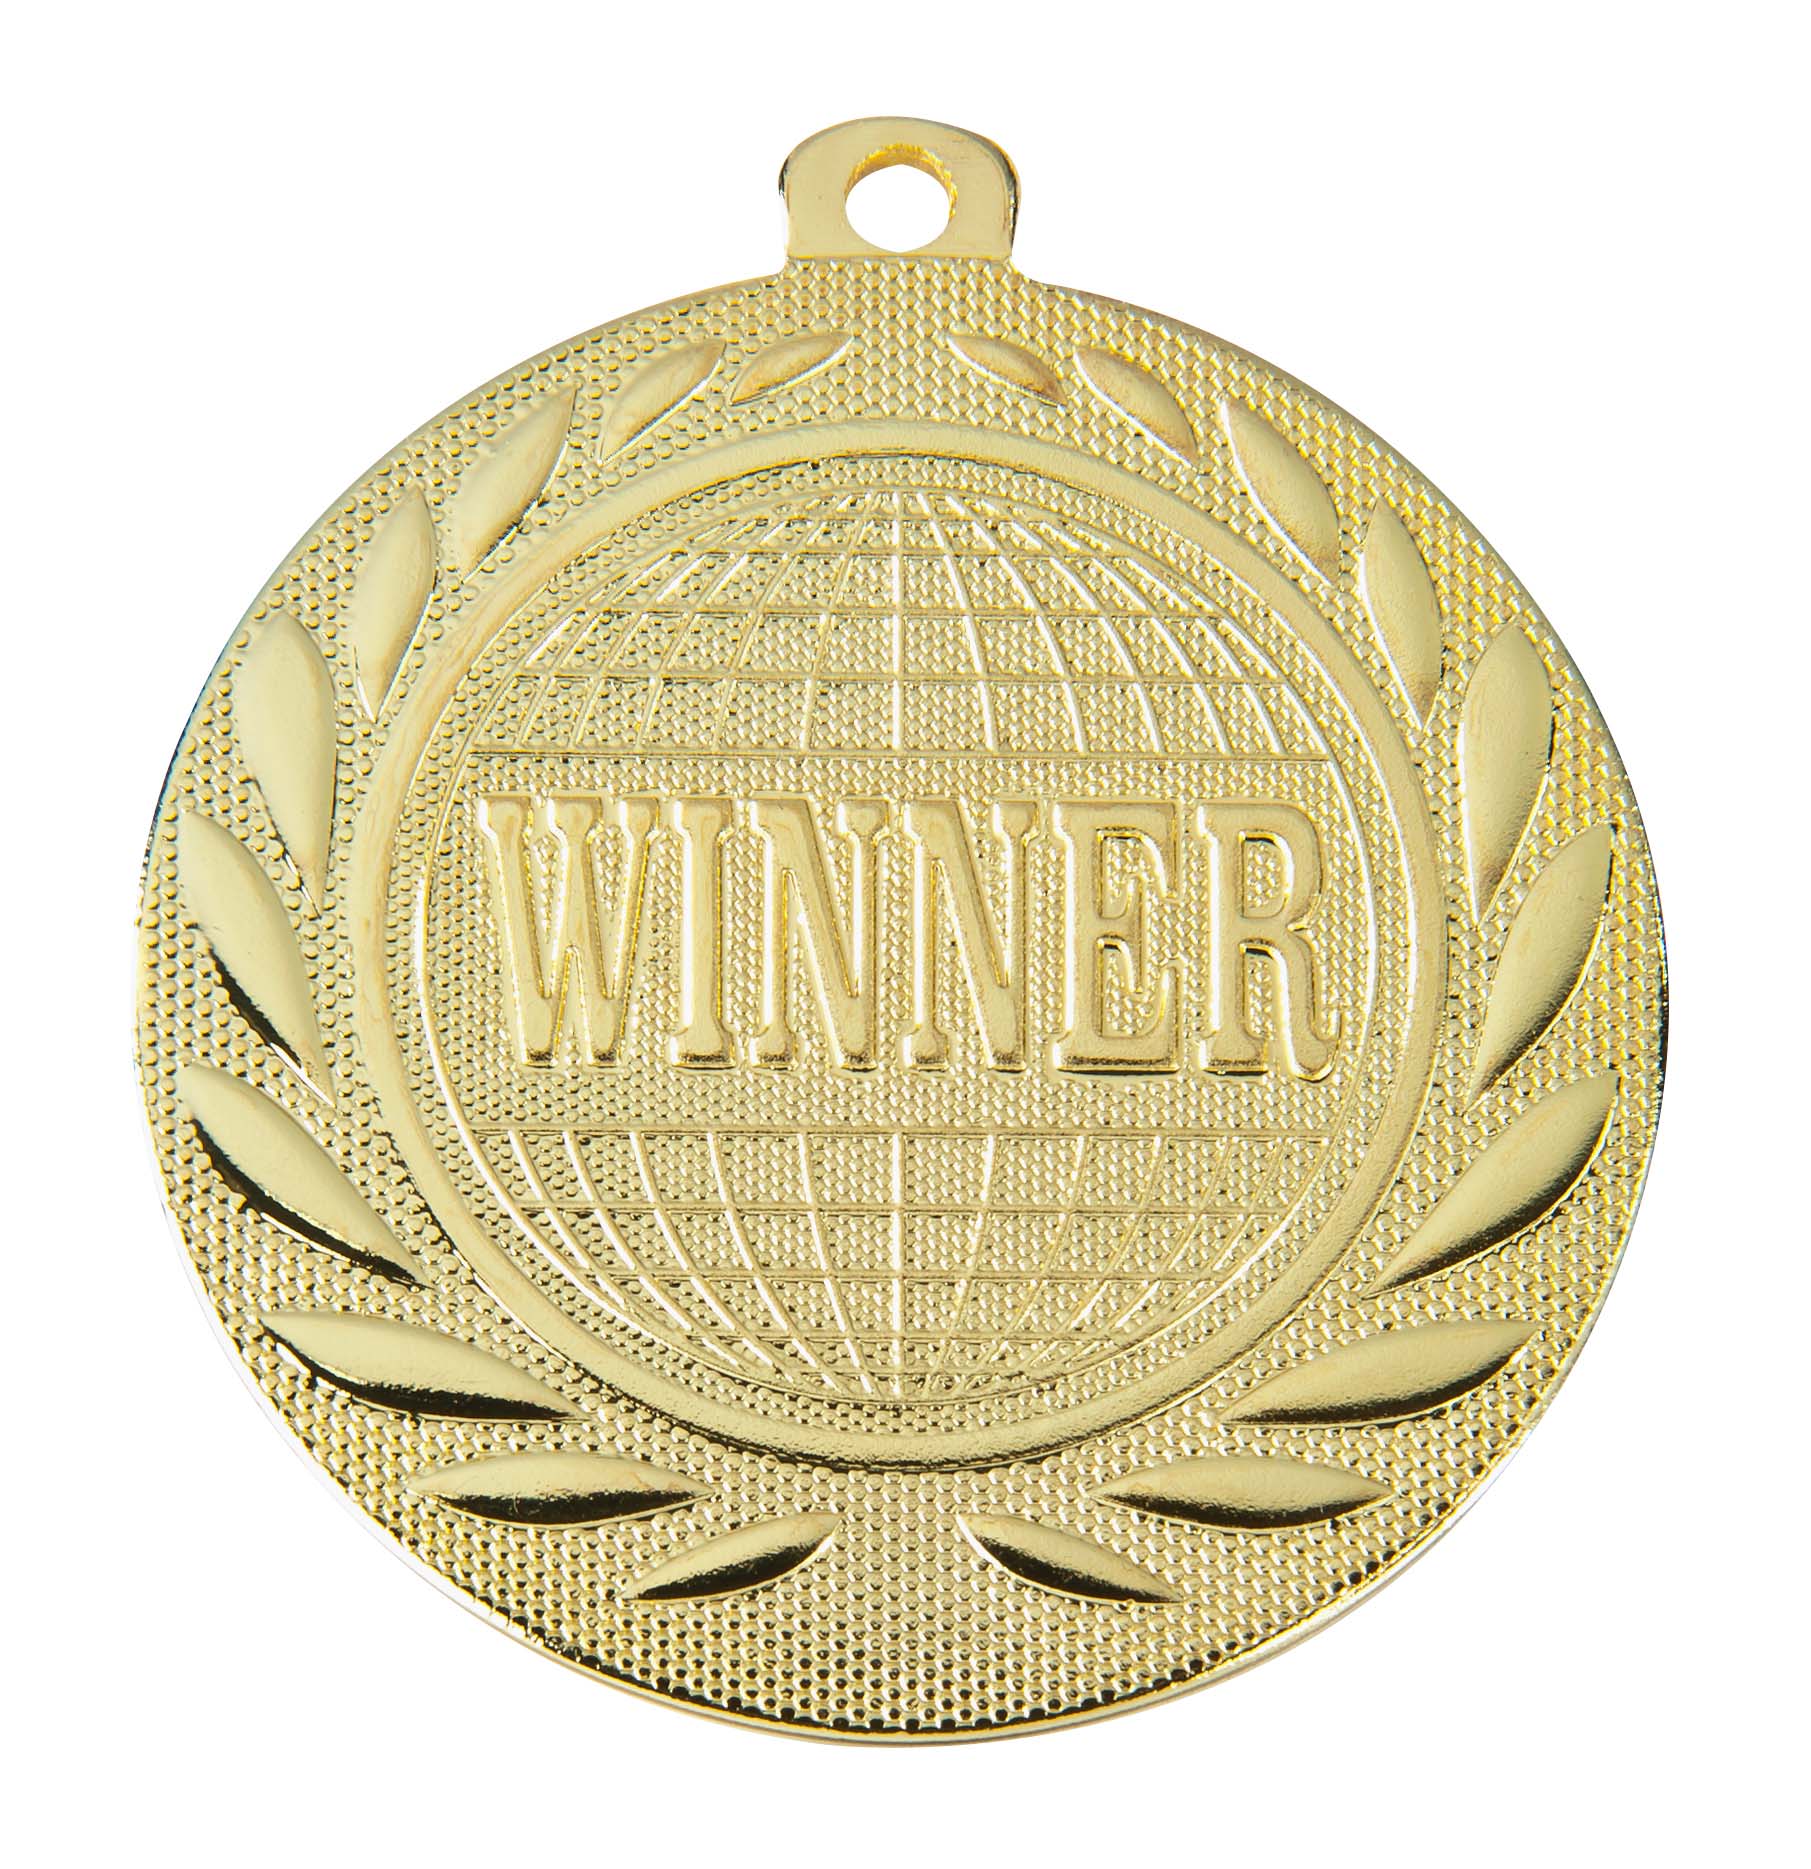 Winner-Medaille DI5000S inkl. Band und Beschriftung Gold Unmontiert